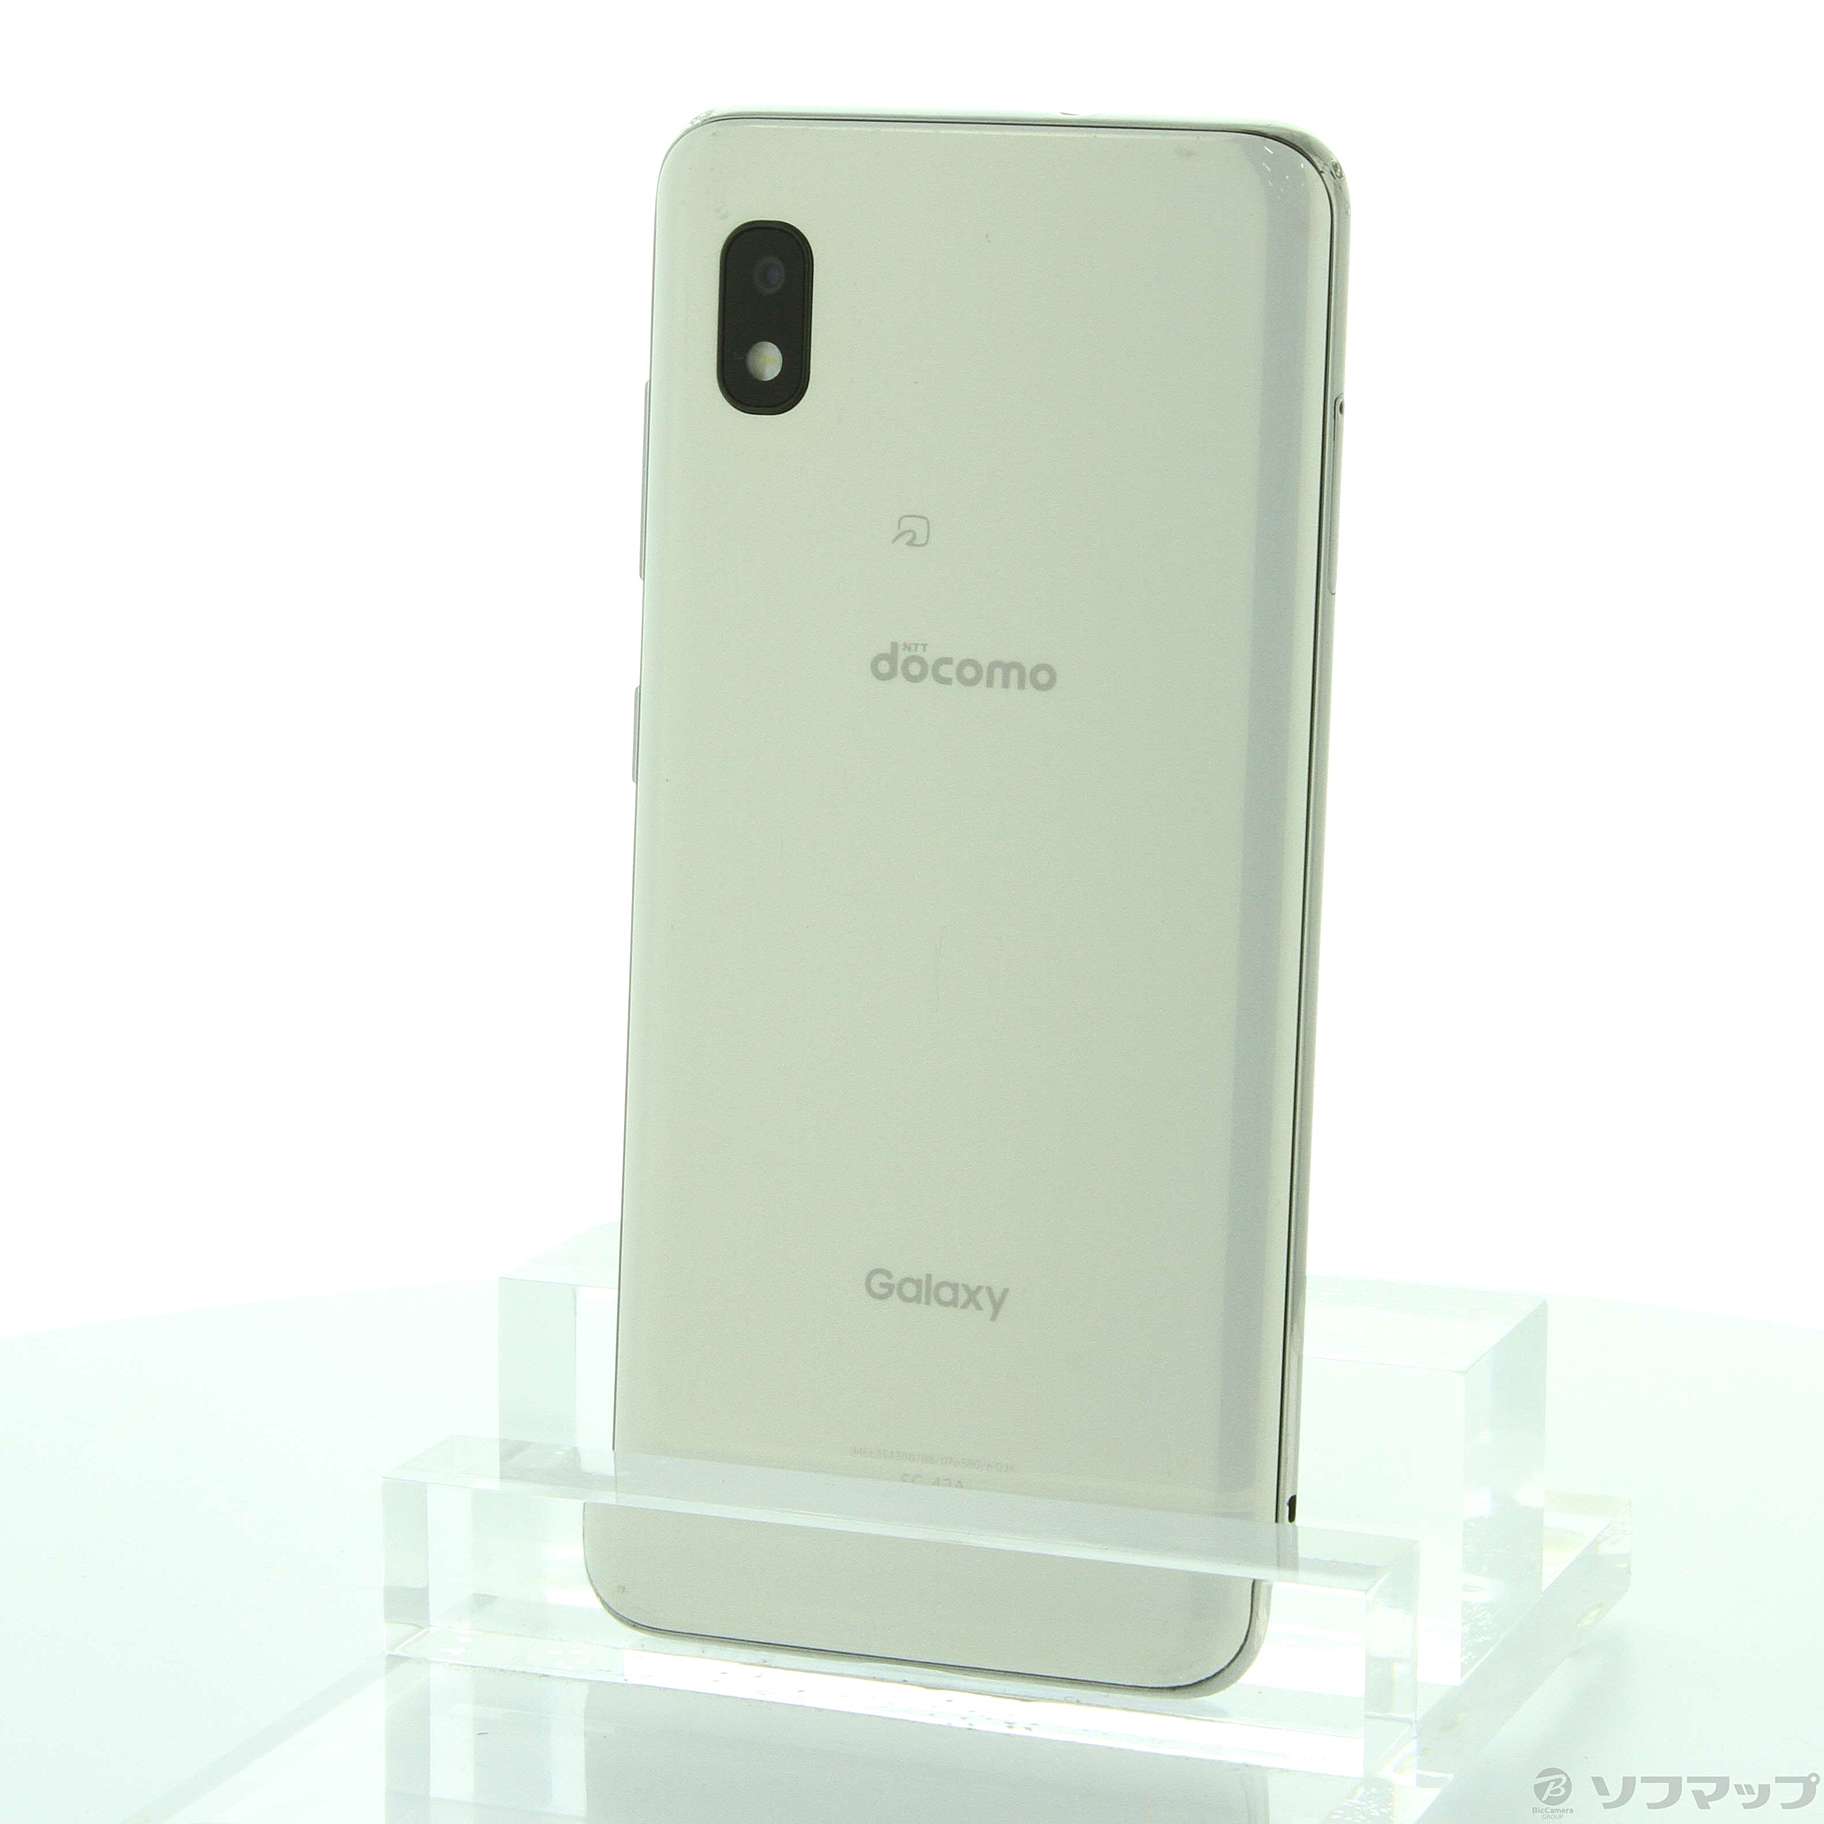 Galaxy A21 ホワイト 64 GB SIMフリースマートフォン本体